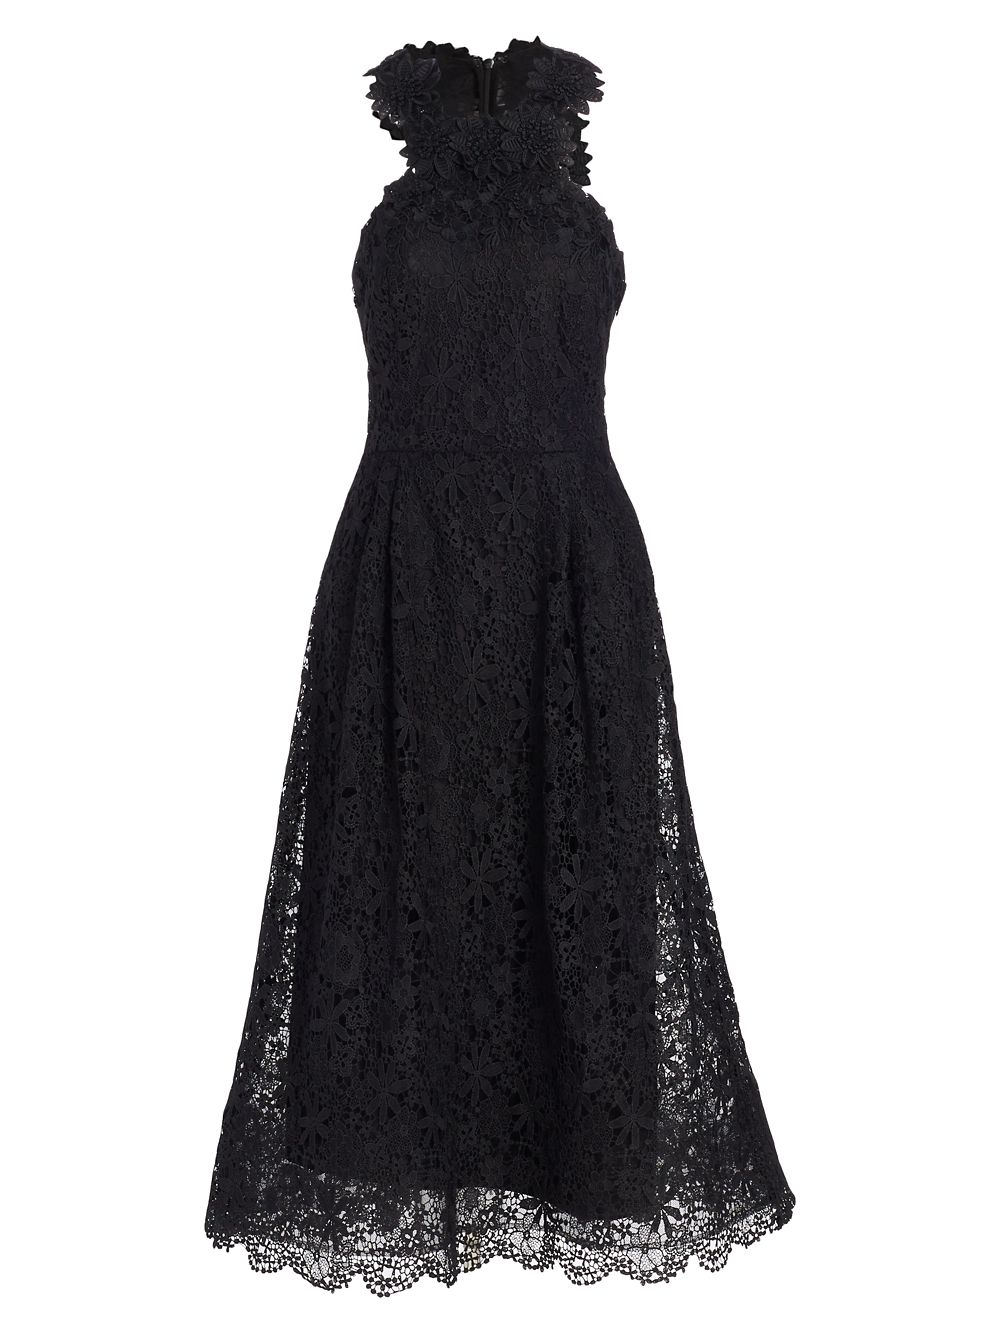 Коктейльное платье без рукавов с вышивкой Teri Jon by Rickie Freeman, черный коктейльное платье с цветочной вышивкой teri jon by rickie freeman черный